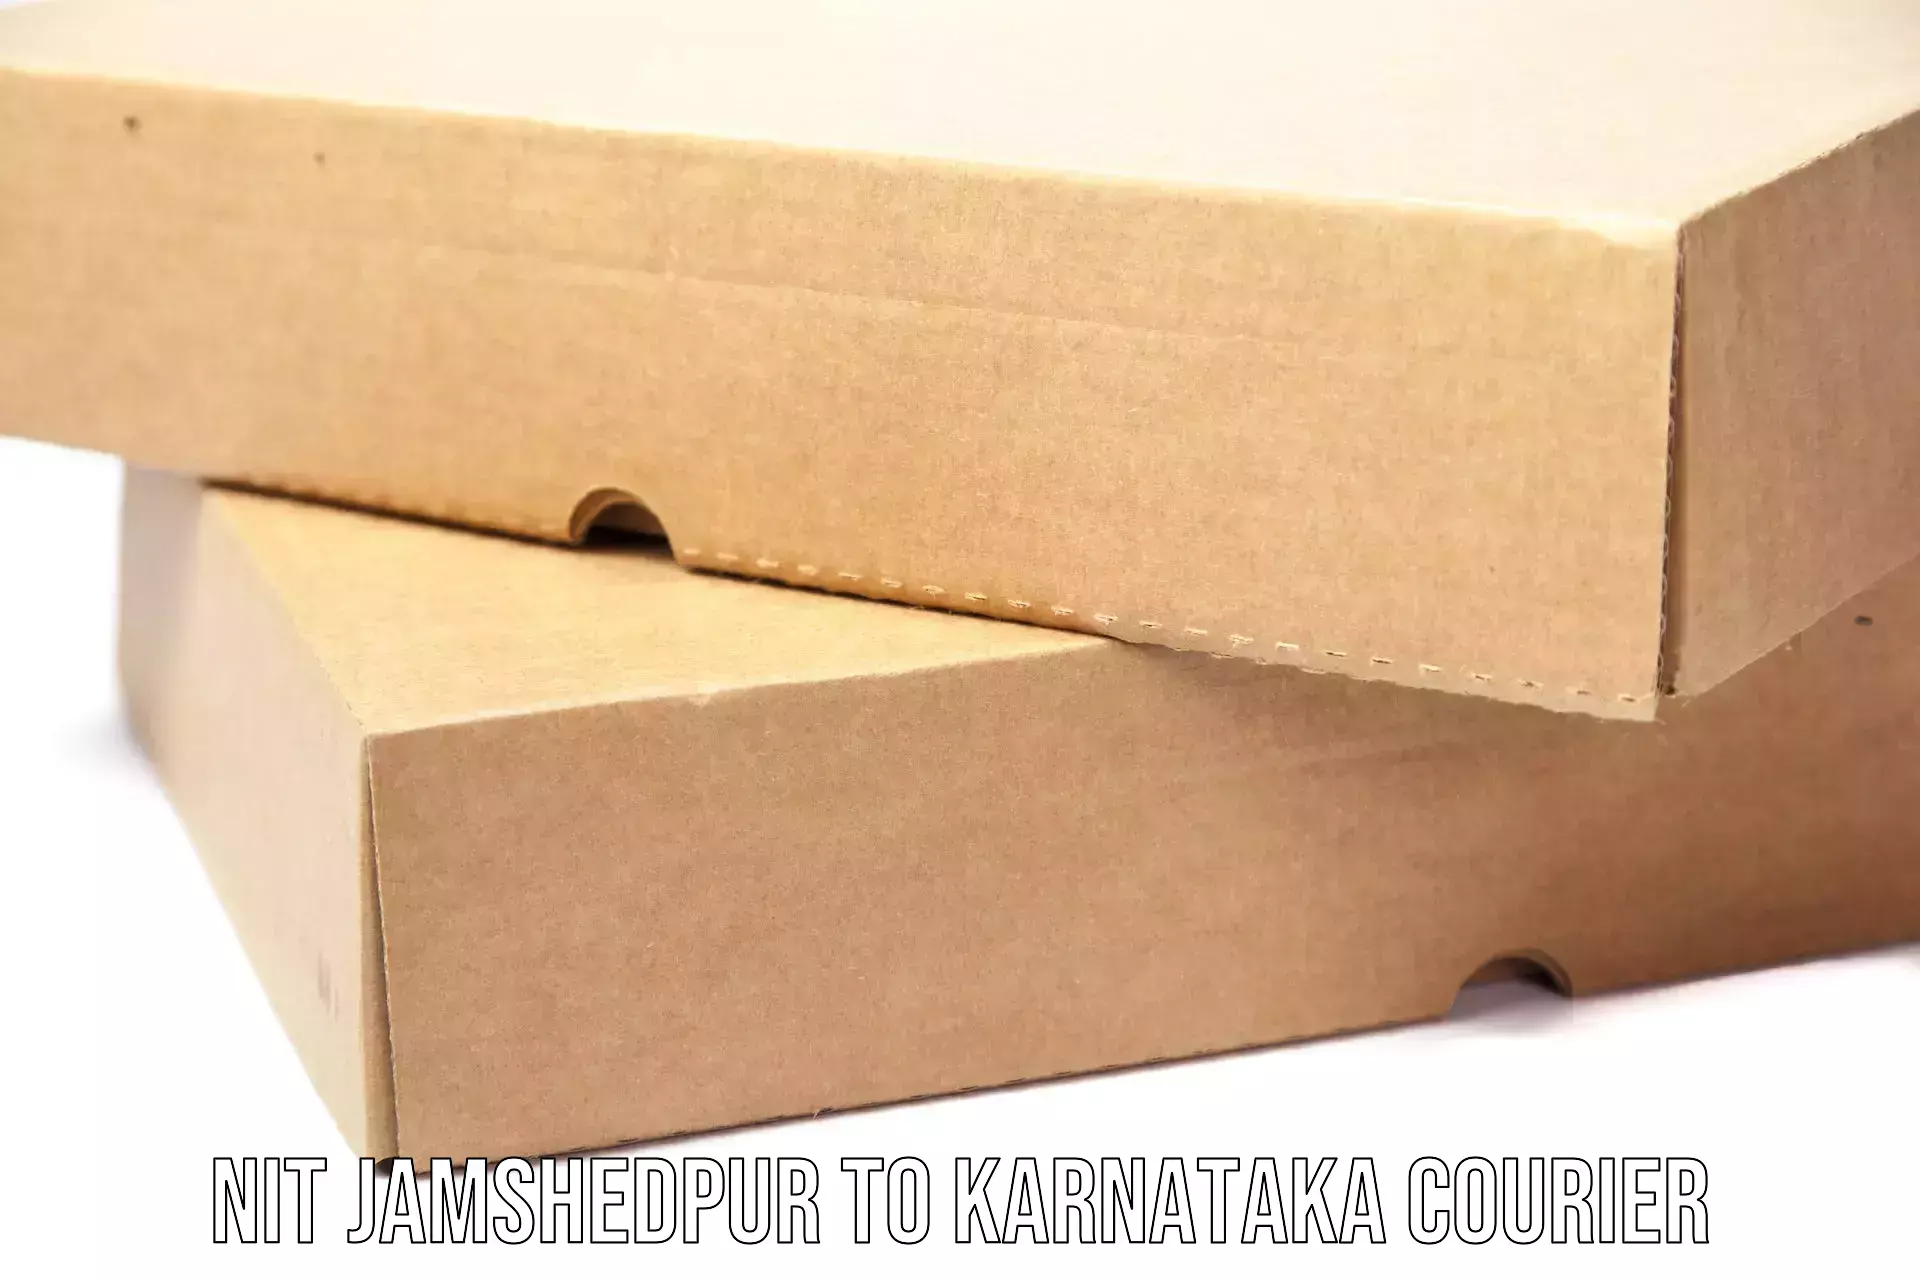 Affordable parcel service NIT Jamshedpur to Haliyal